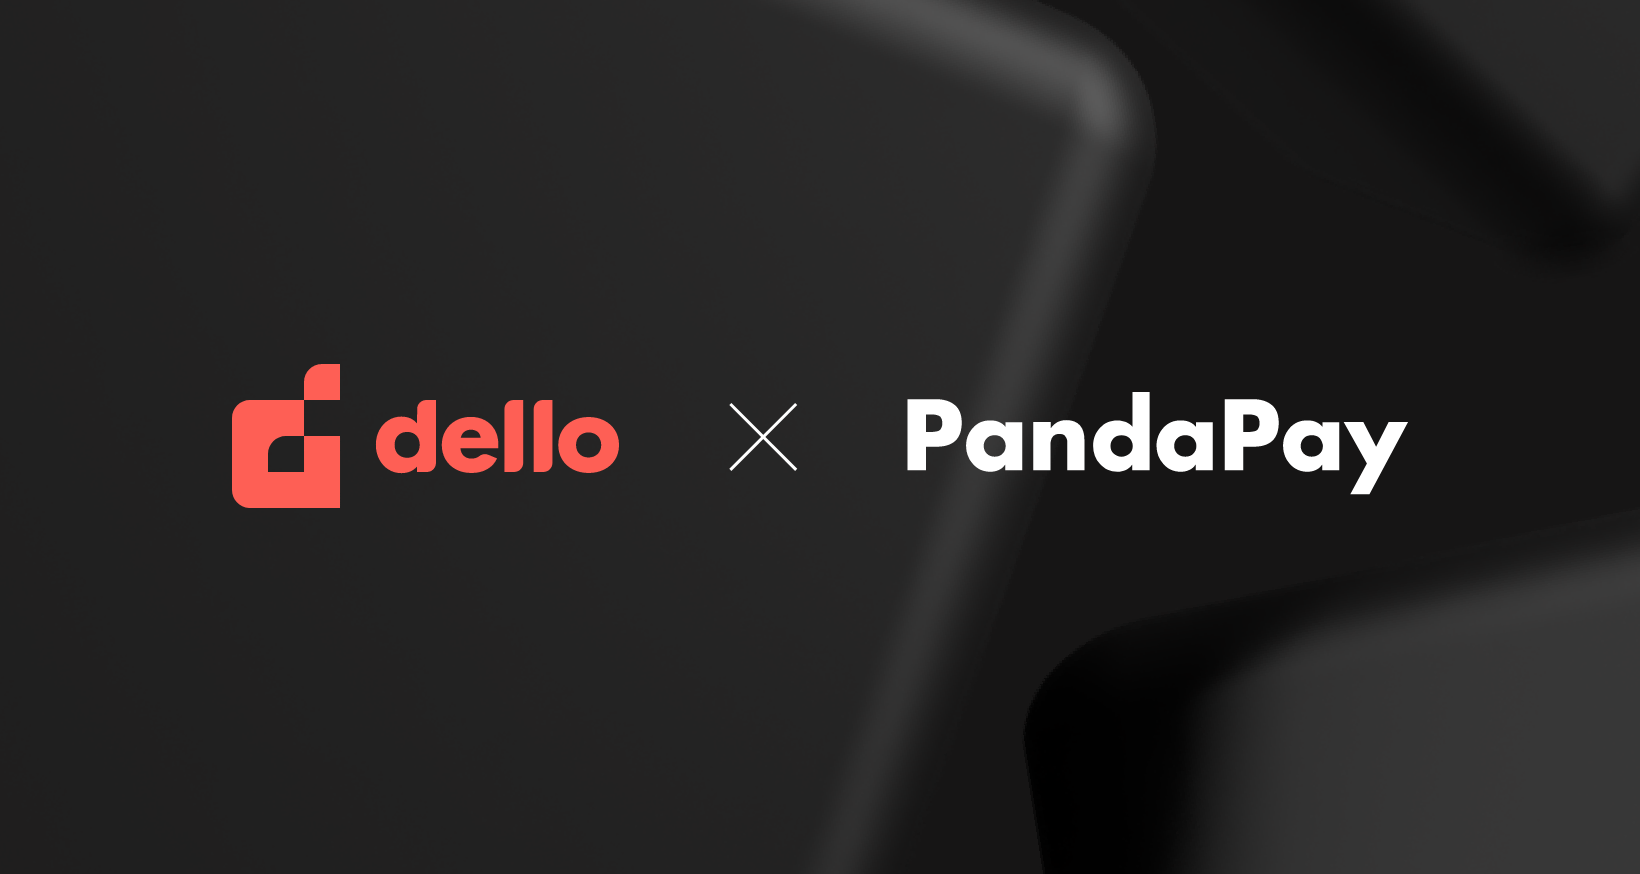 Dello and PandaPay logos.